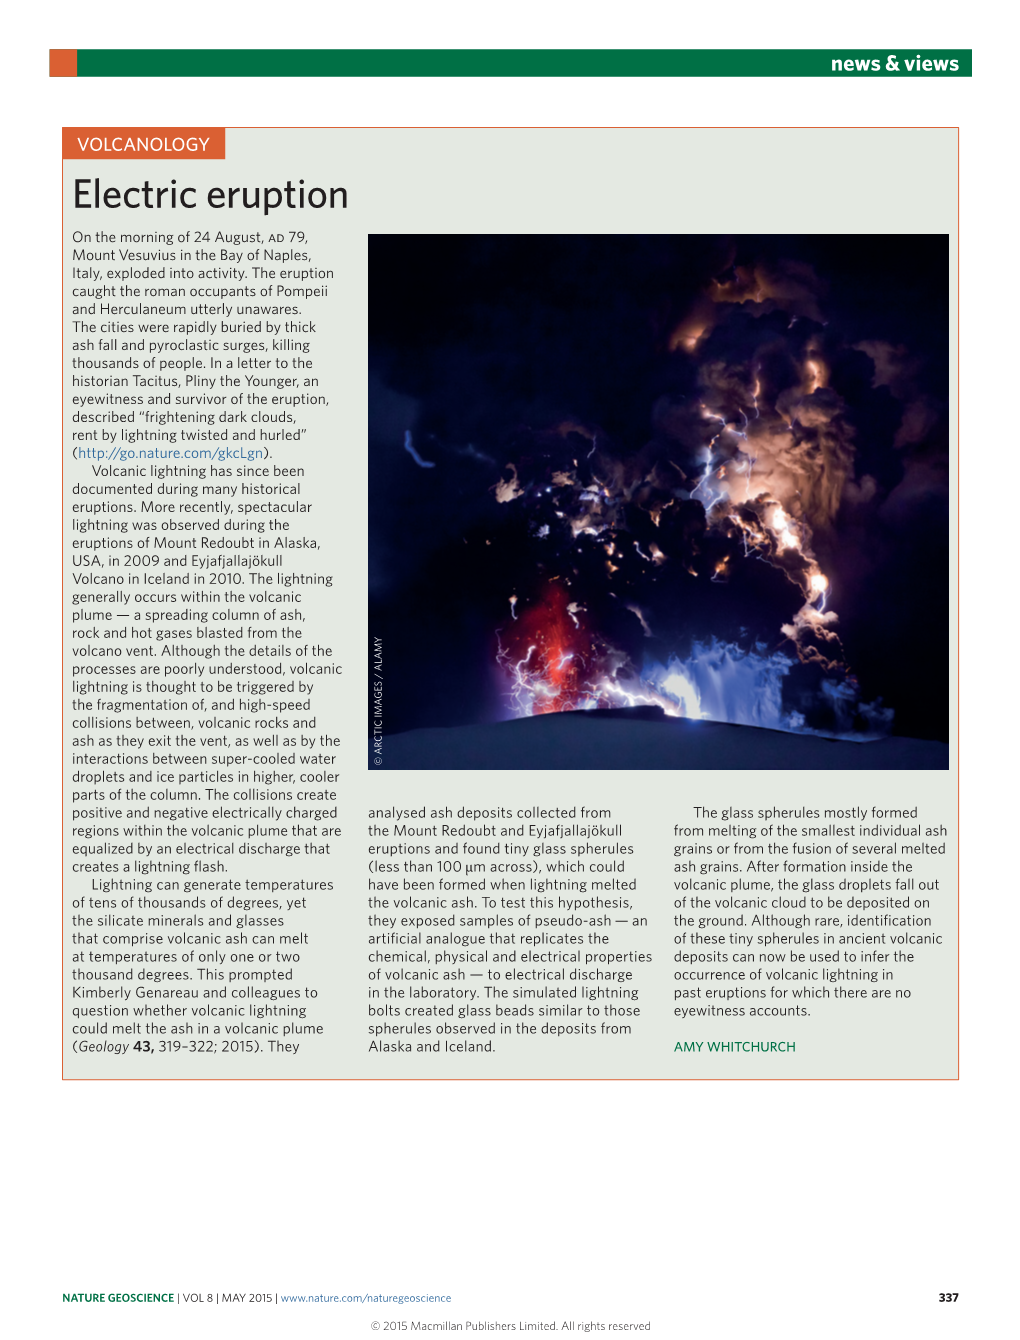 Volcanology: Electric Eruption